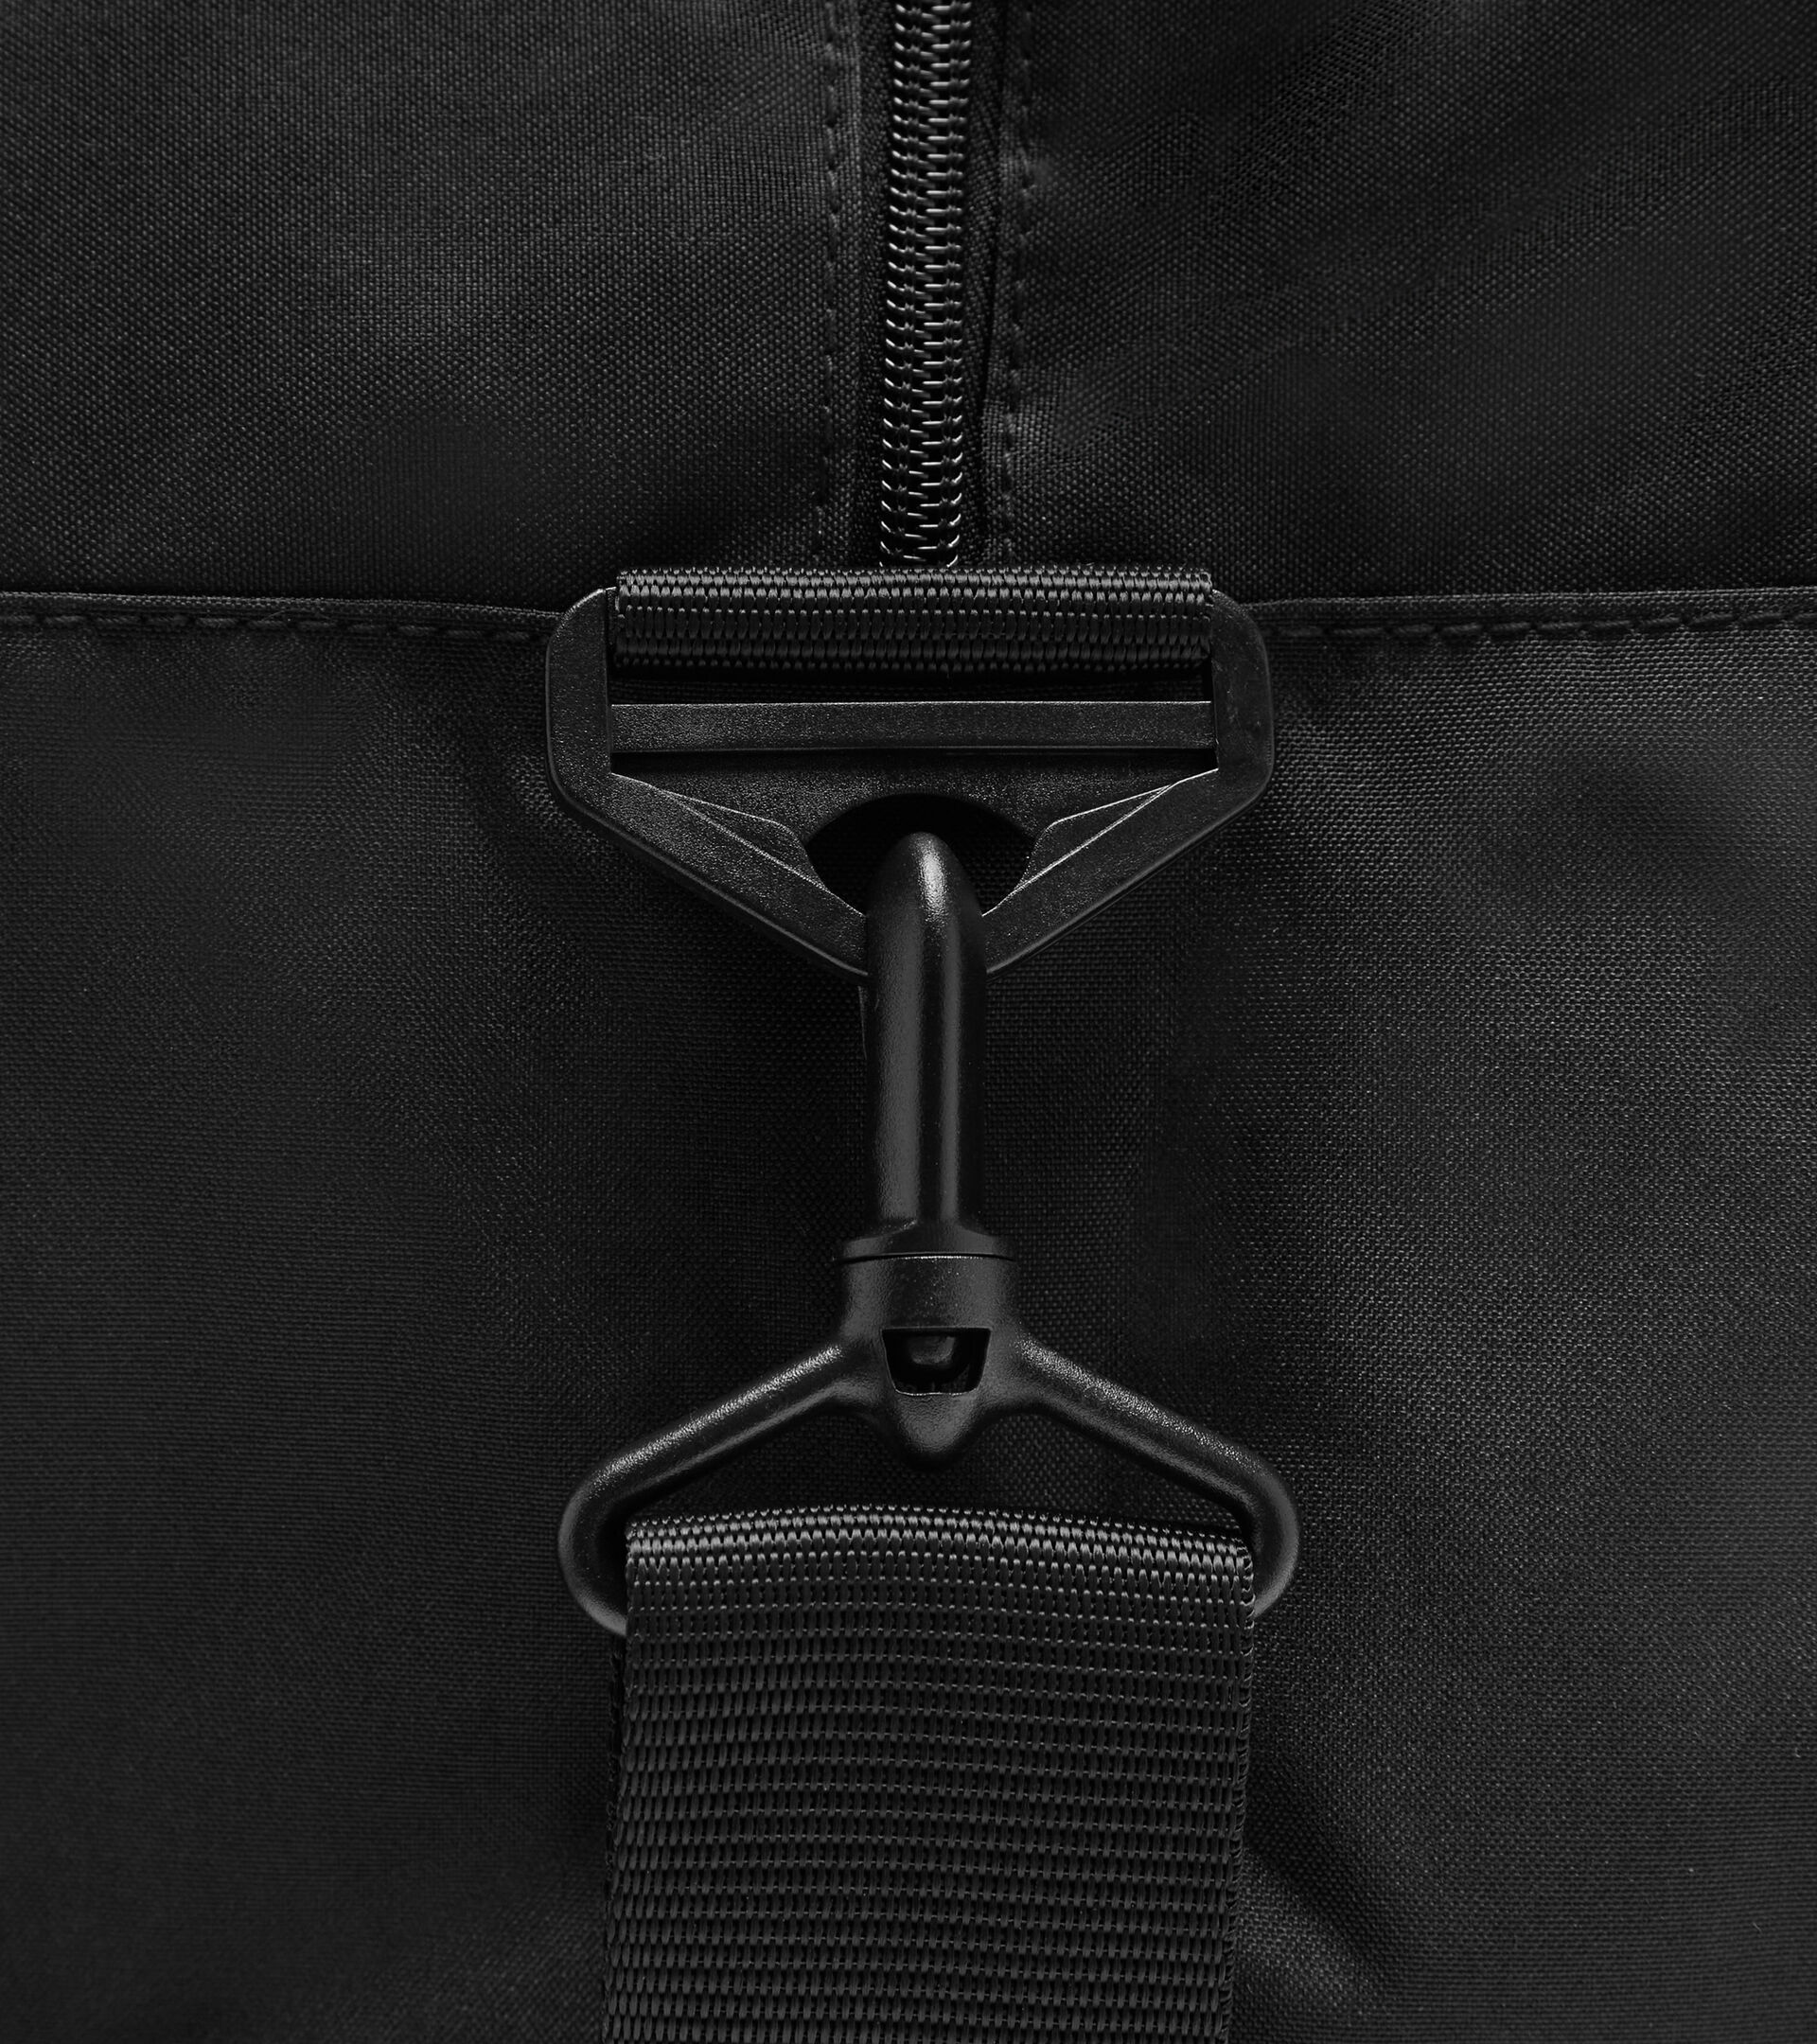 Training bag BAG TENNIS BLACK - Diadora